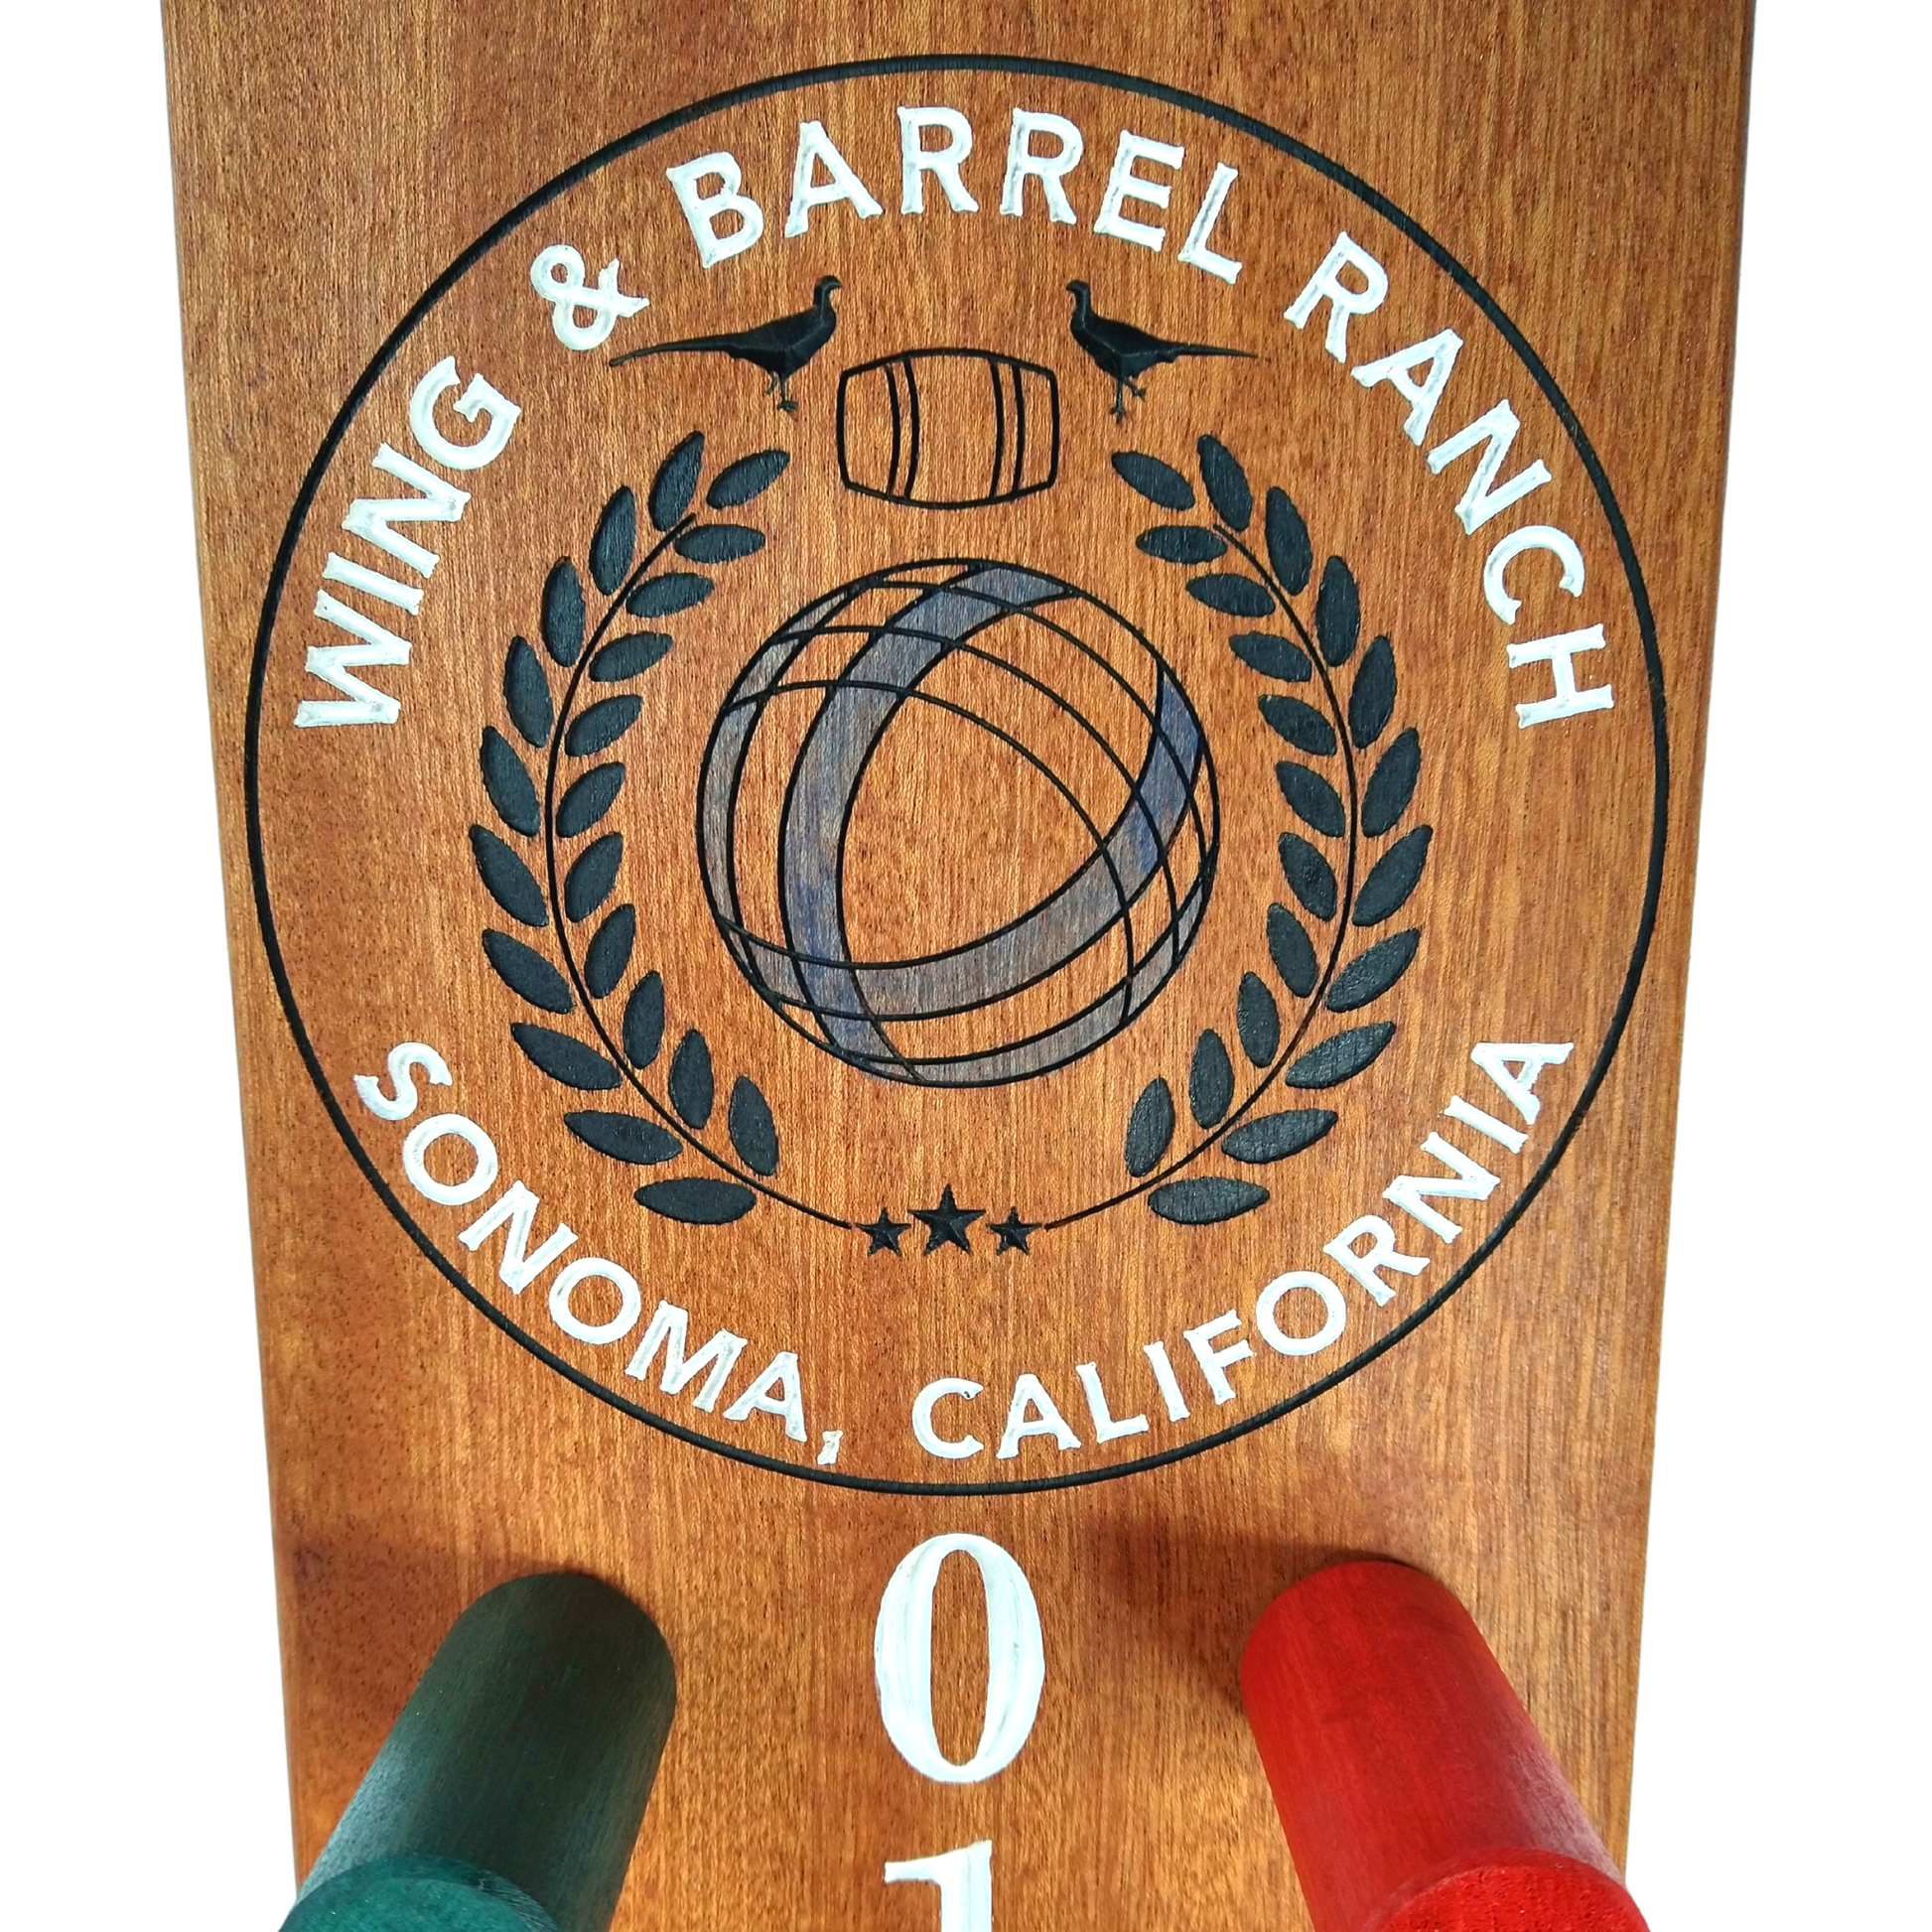 Wing & Barrel logo bocce scoreboard